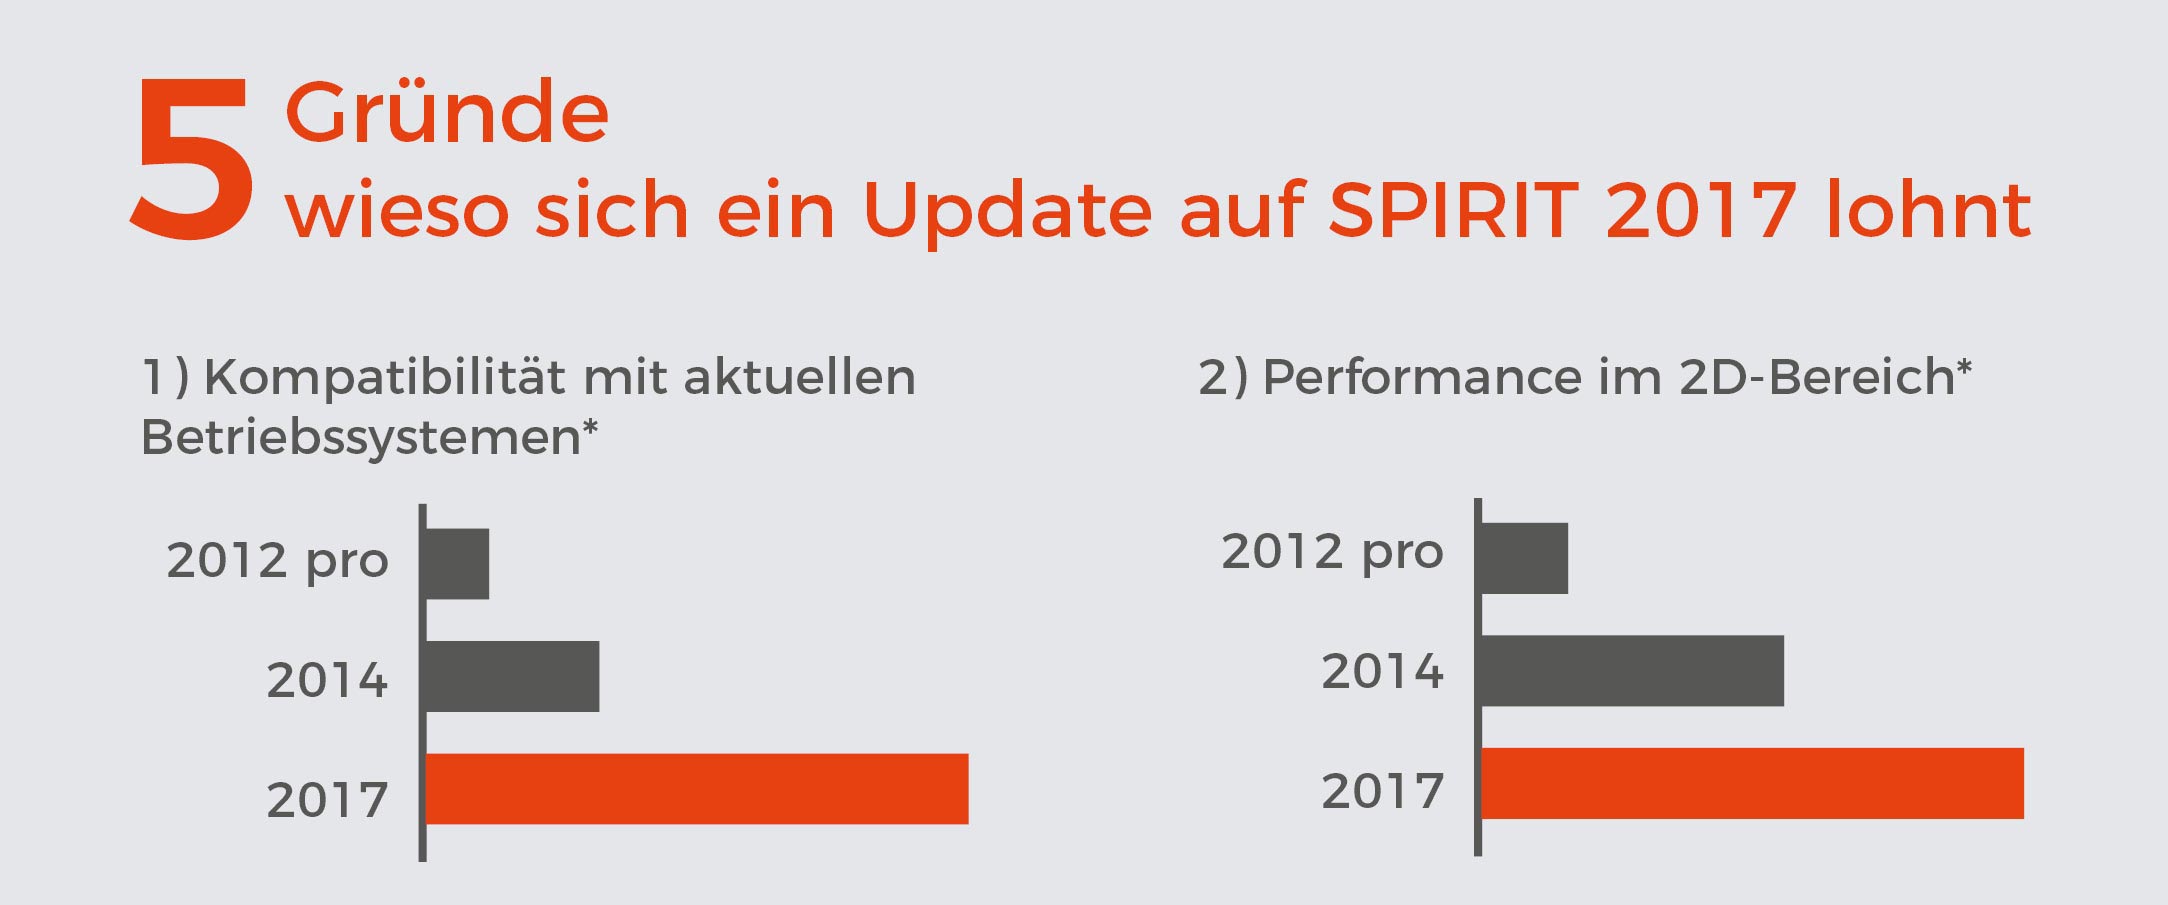 SPIRIT 2017 5 Gründe wieso sich ein Update auf SPIRIT 2017 lohnen Infografik